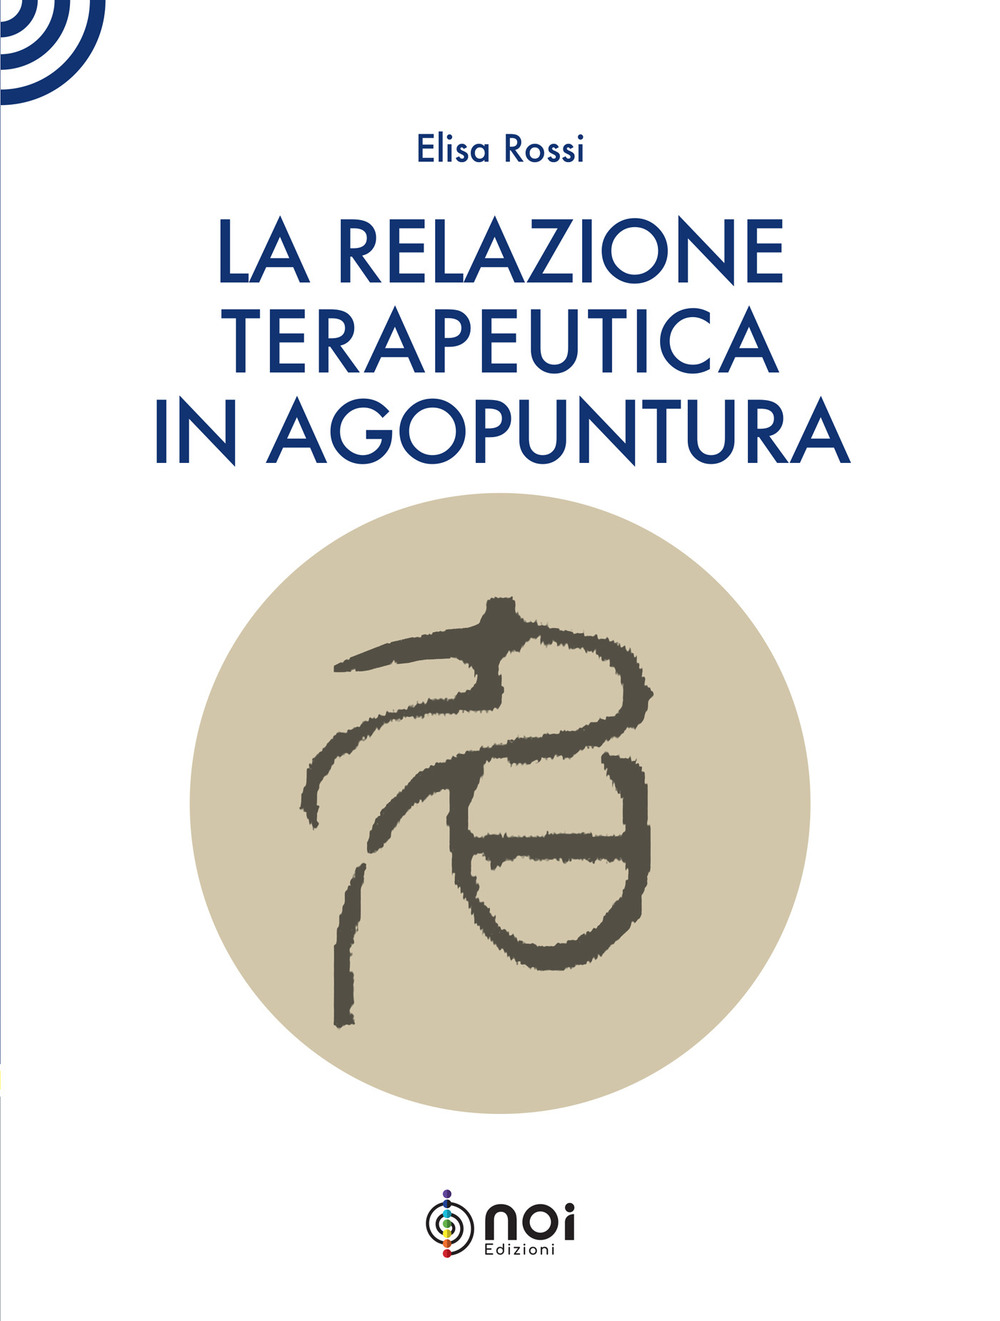 Image of La relazione terapeutica in agopuntura